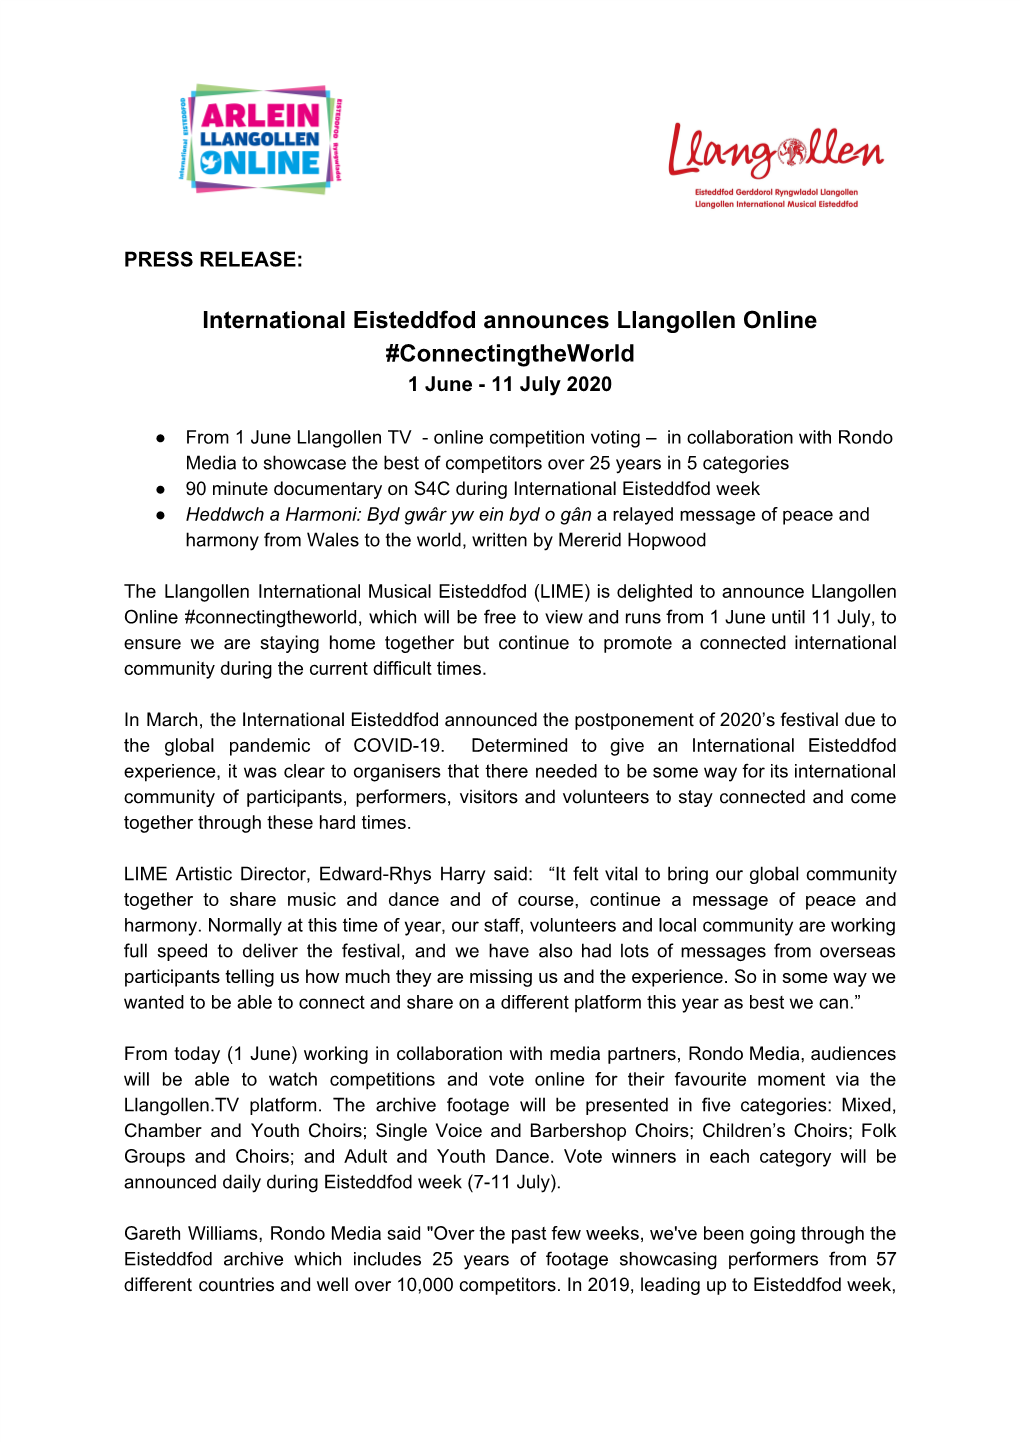 International Eisteddfod Announces Llangollen Online #Connectingtheworld 1 June - 11 July 2020